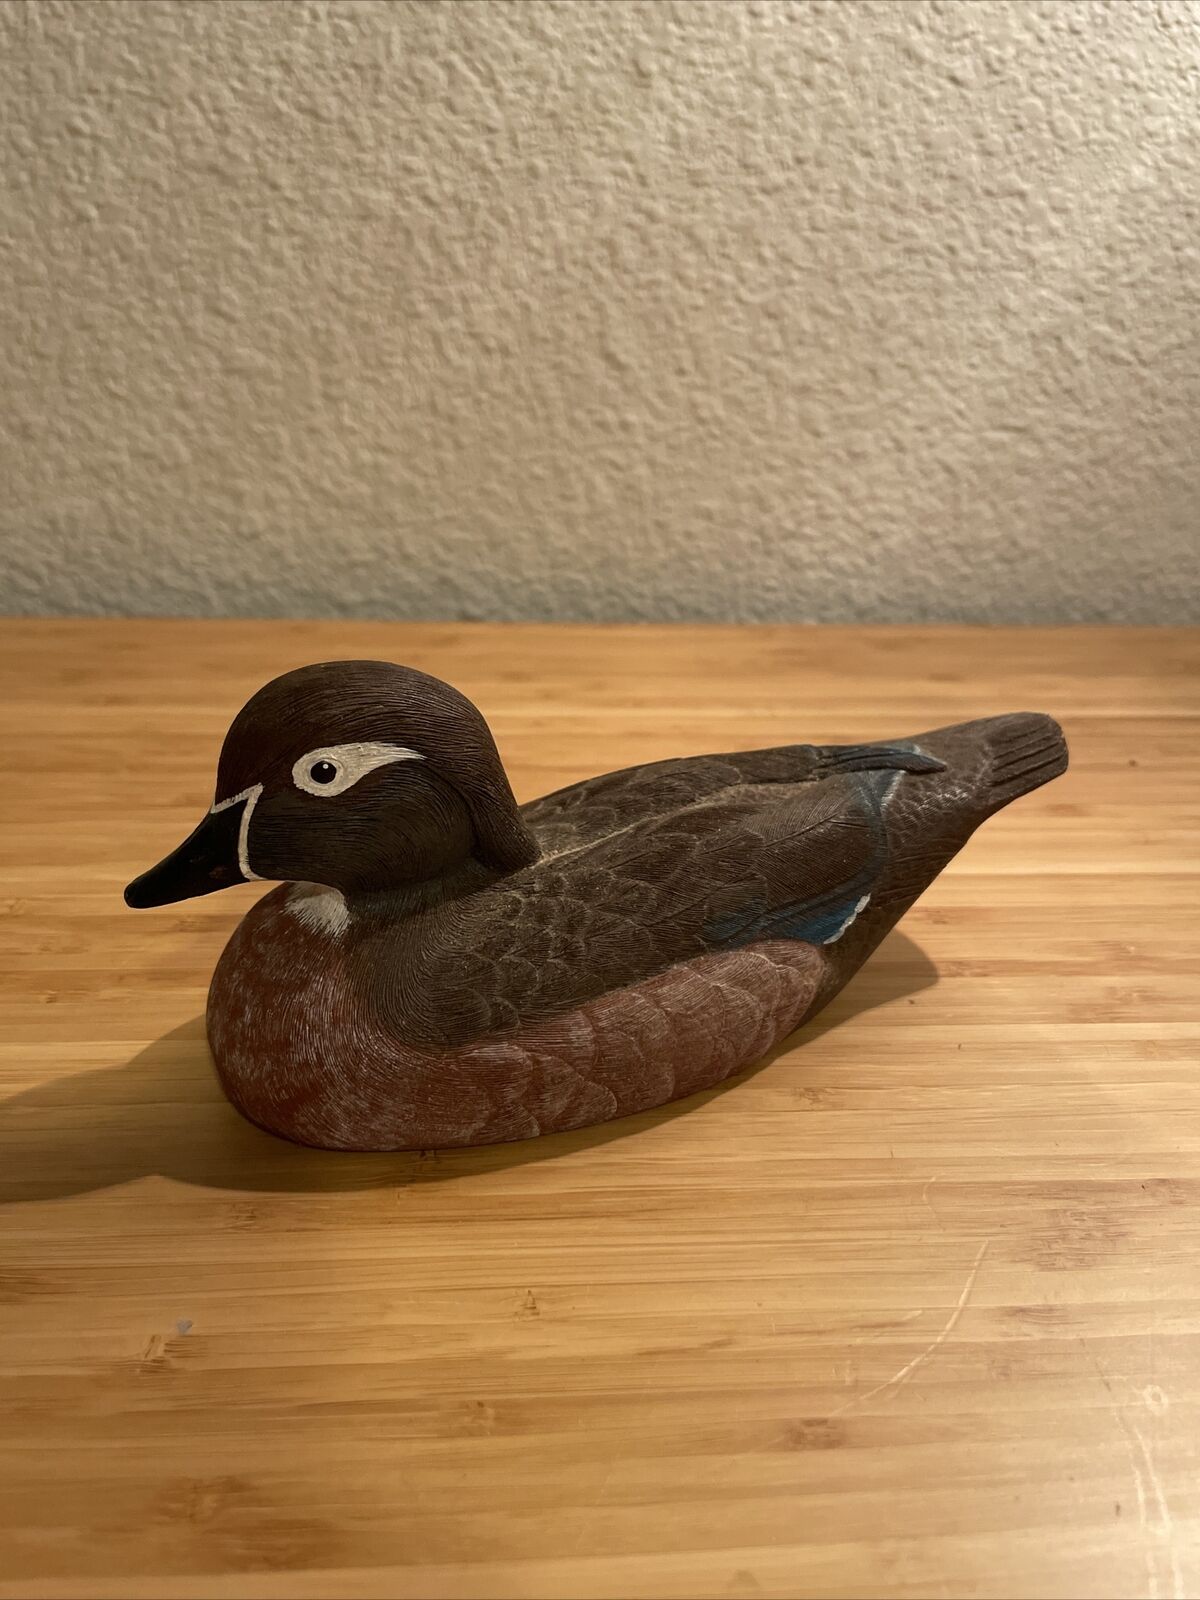 Jennings Decoy Co. Signed Wood duck Hen Decoy Duck